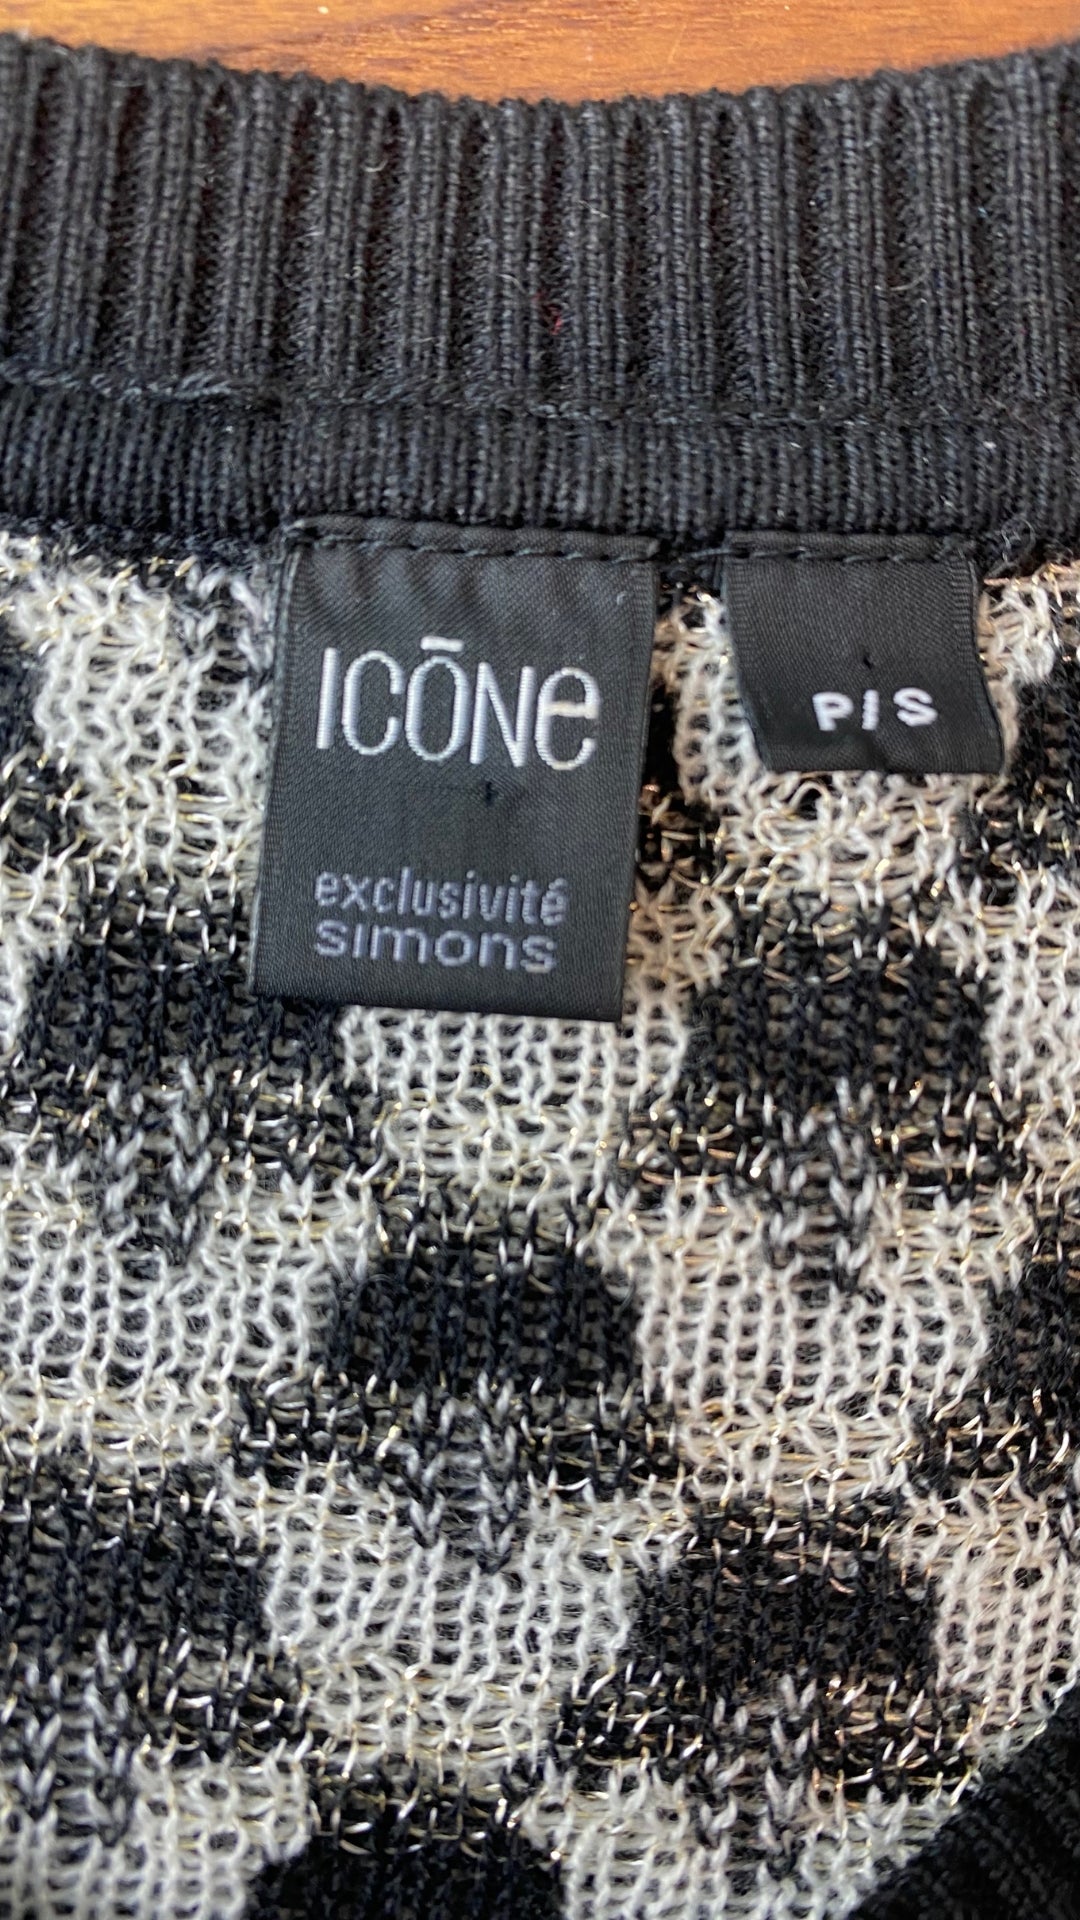 Cardigan tricot motif geo Icône, taille small. Vue de l'étiquette de marque et taille.